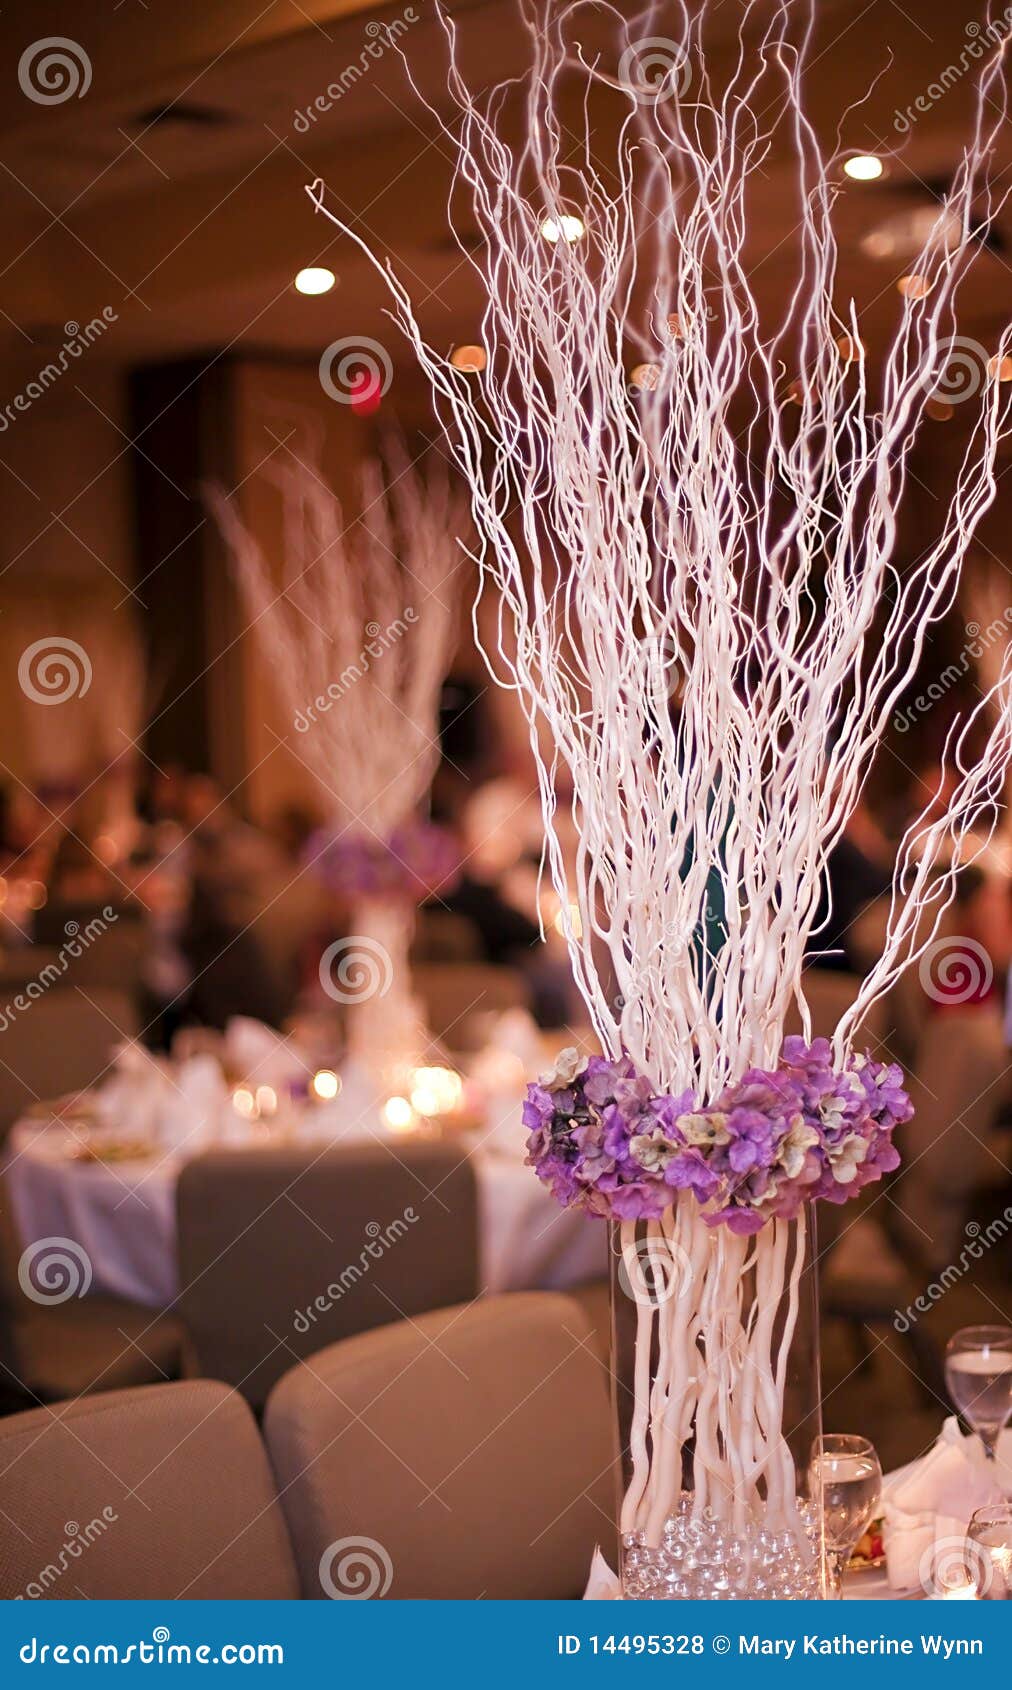 Wedding flower sticks